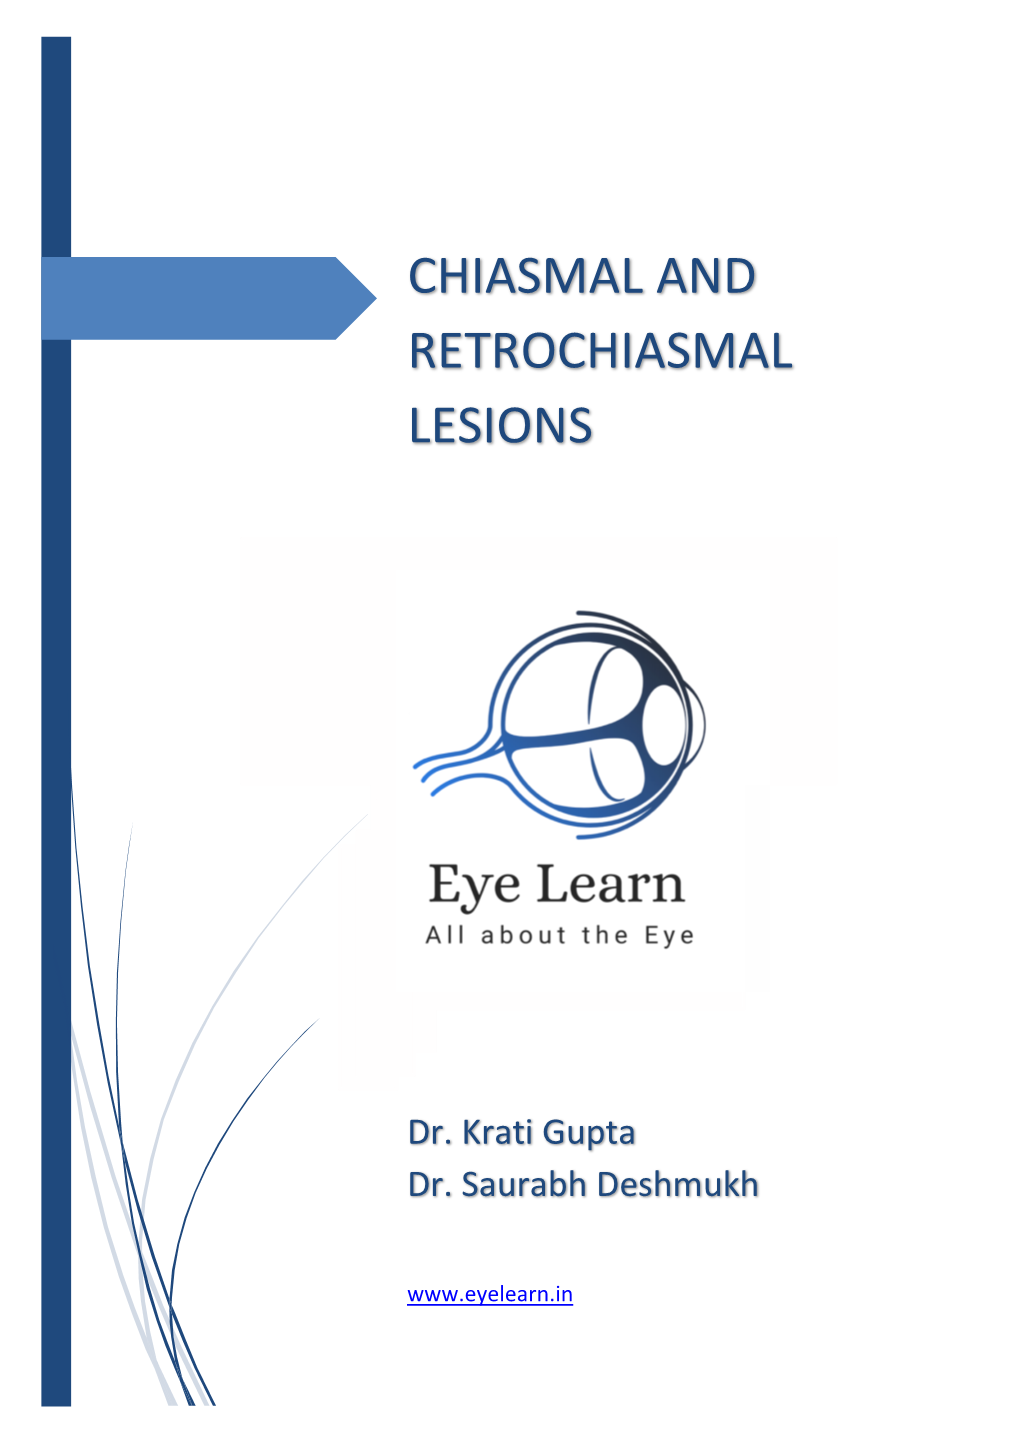 Chiasmal and Retrochiasmal Lesions